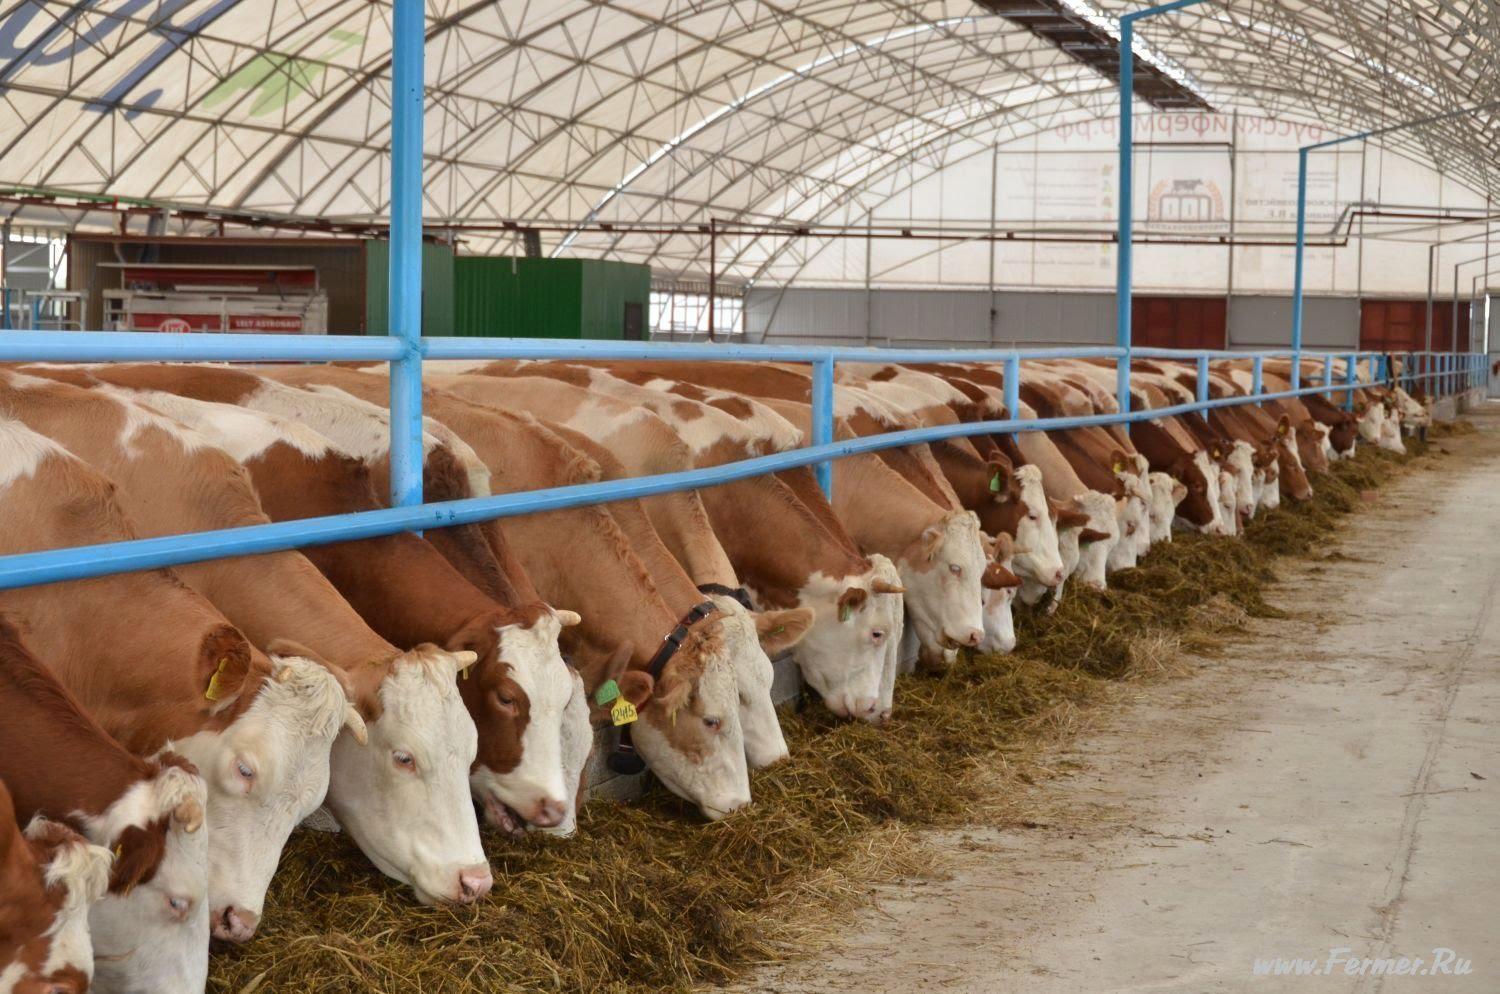 Аграріям відшкодують вартість будівництва тваринницьких ферм в розмірі 220 млн грн – Мінагрополітики 